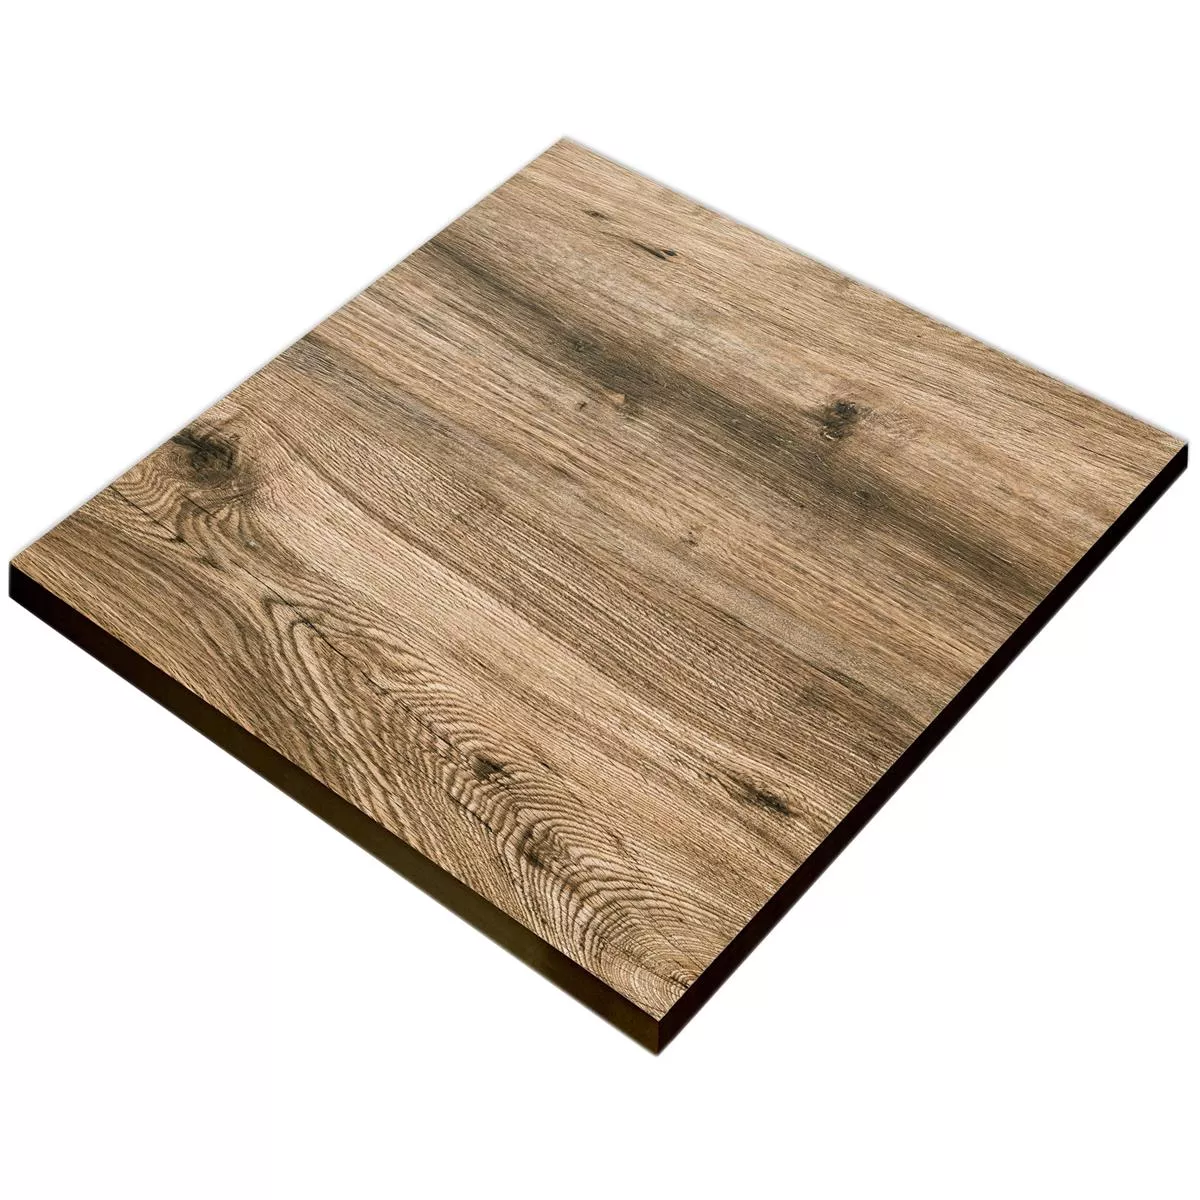 Taras Płyta Starwood Wygląd Drewna Oak 60x60cm